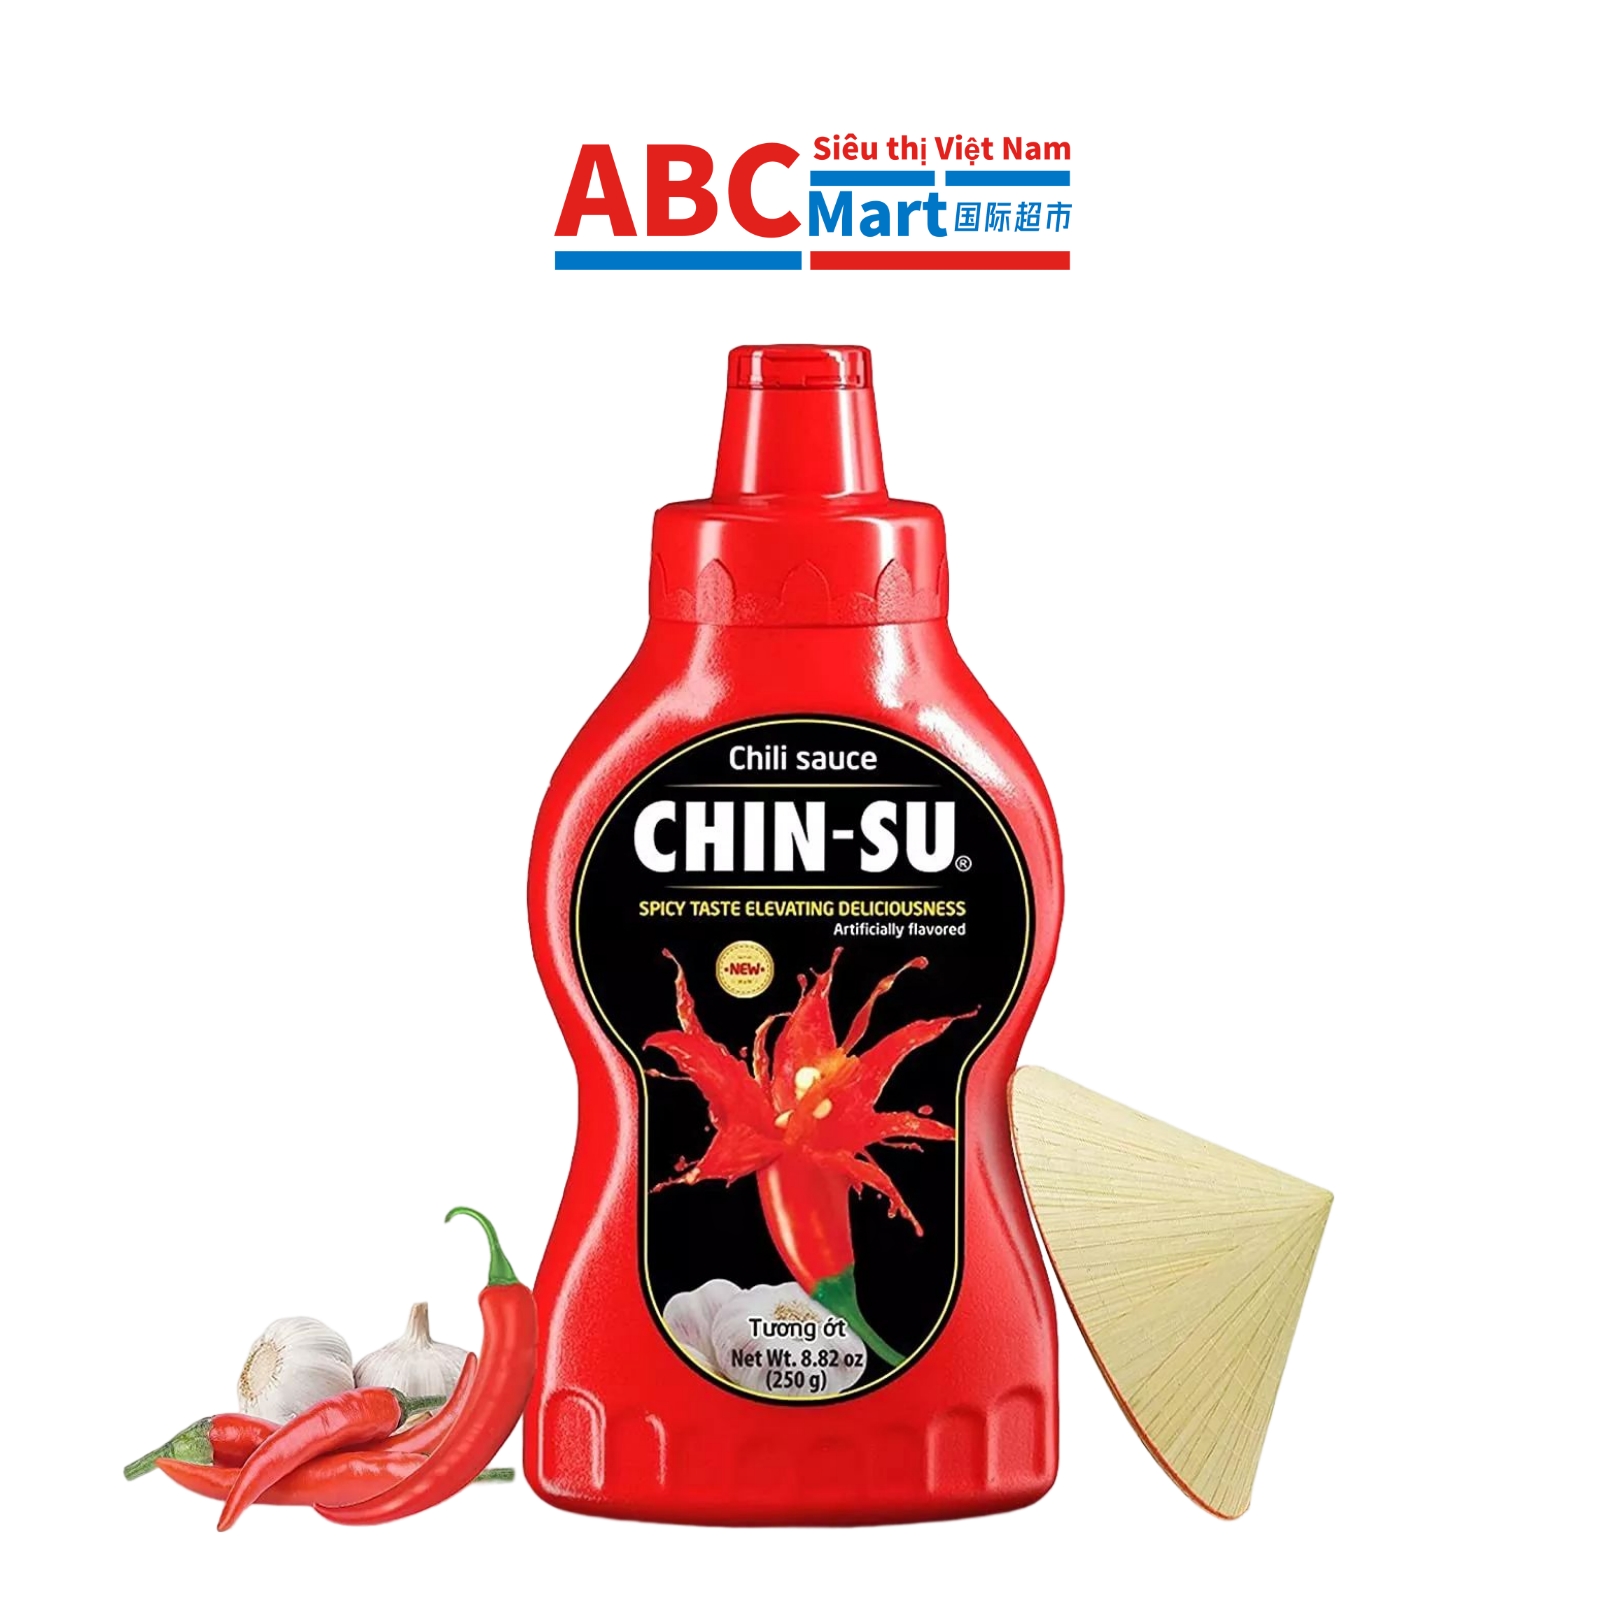 【Việt Nam-Tương ớt Chinsu chai 250g】金苏蒜蓉辣椒酱250g-ABCMart 国际超市